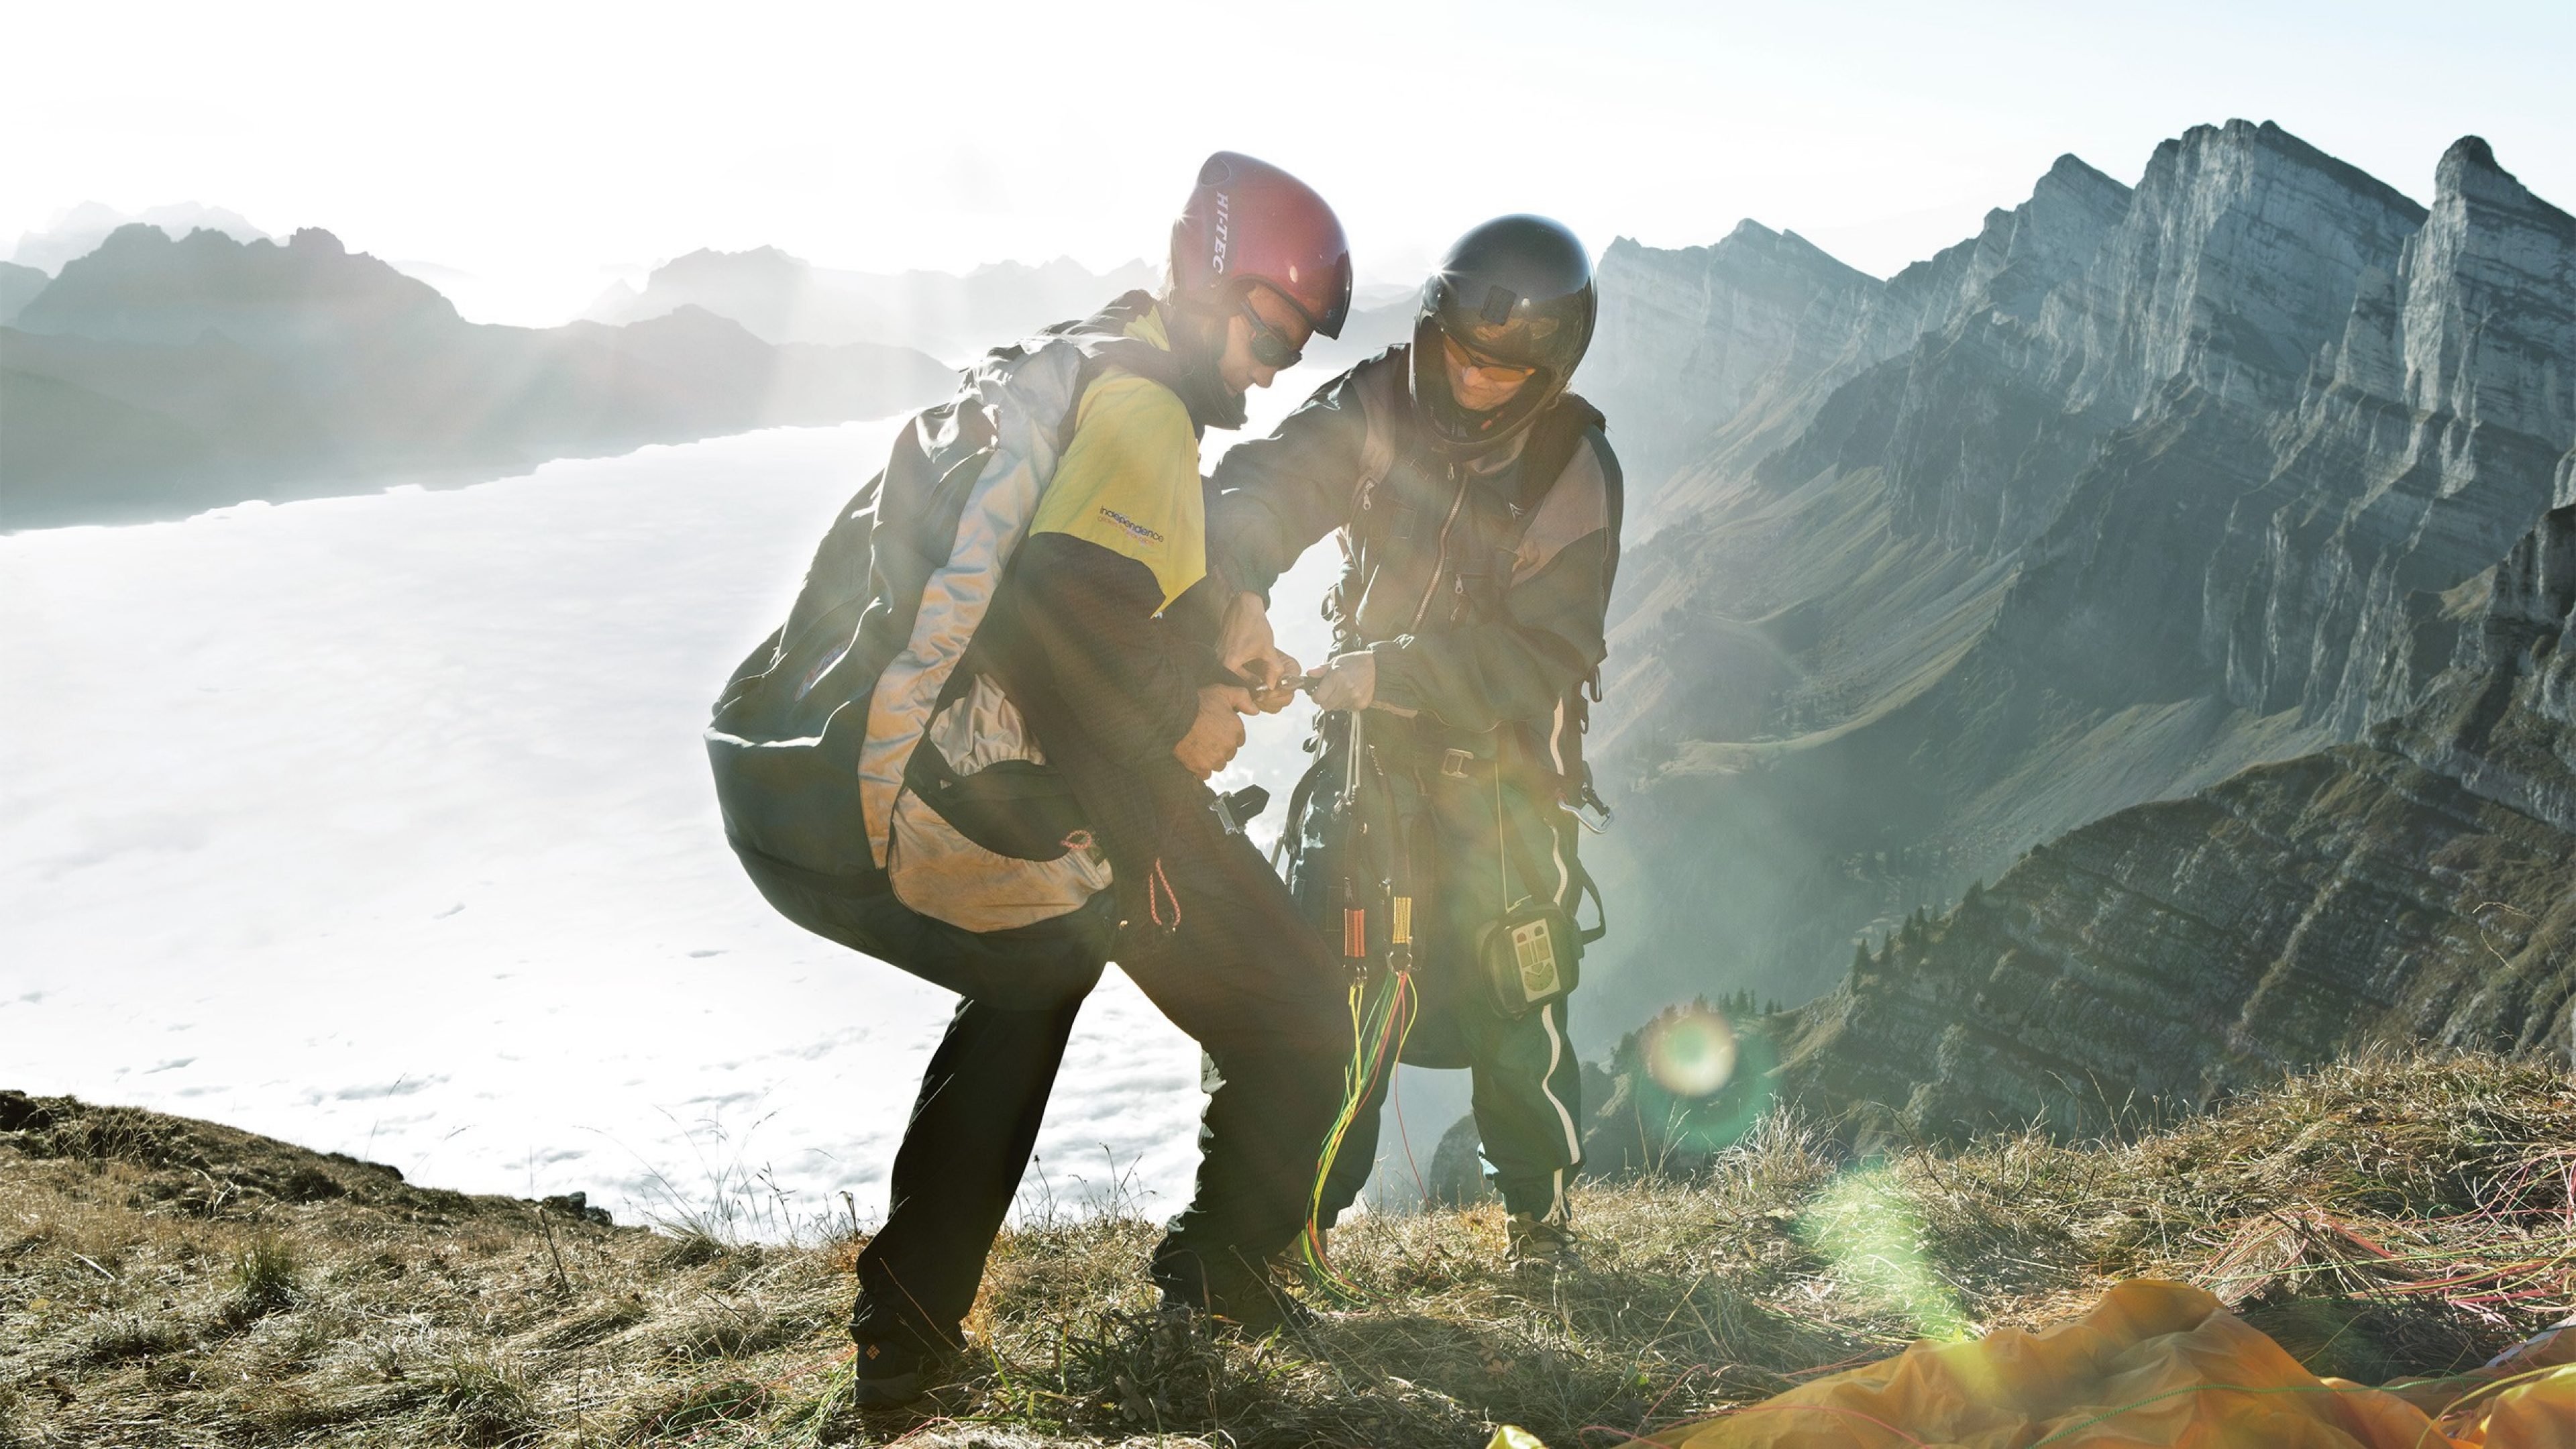 Zwei Personen, bereit für einen Fallschirmsprung, stehen an einem steilen Bergabhang mit Blick auf eine atemberaubende Landschaft. Das Bild vermittelt ein Gefühl von Abenteuer und Adrenalin.